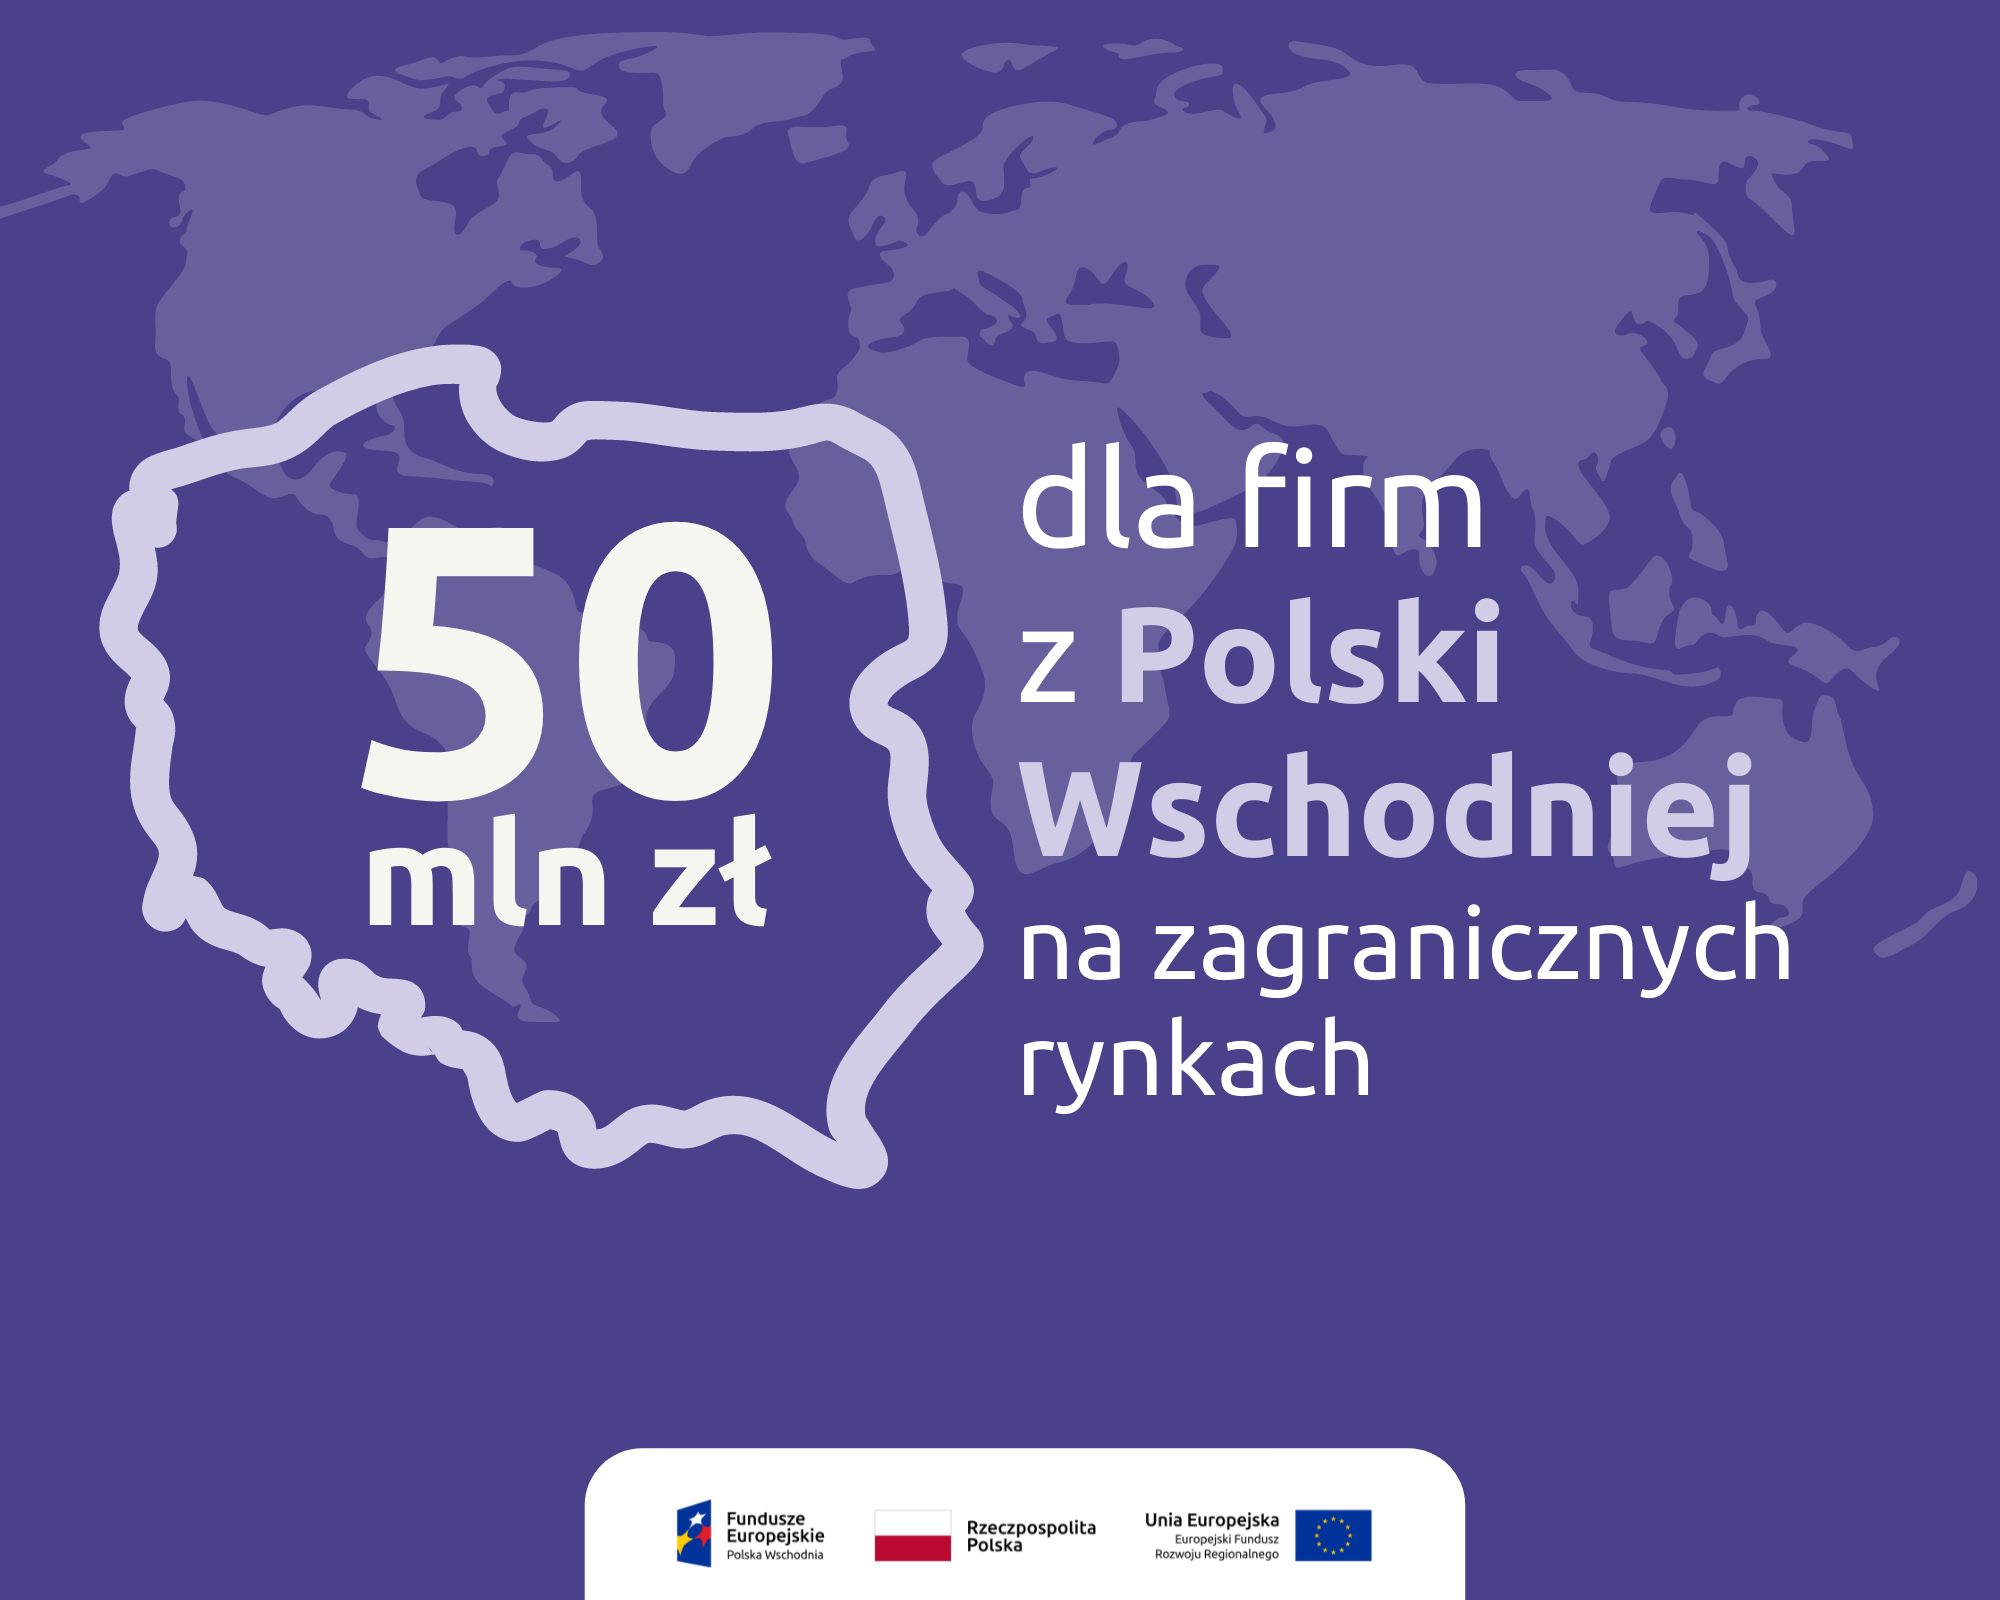 50 mln zł dla firm z Polski Wschodniej na zagranicznych rynkach